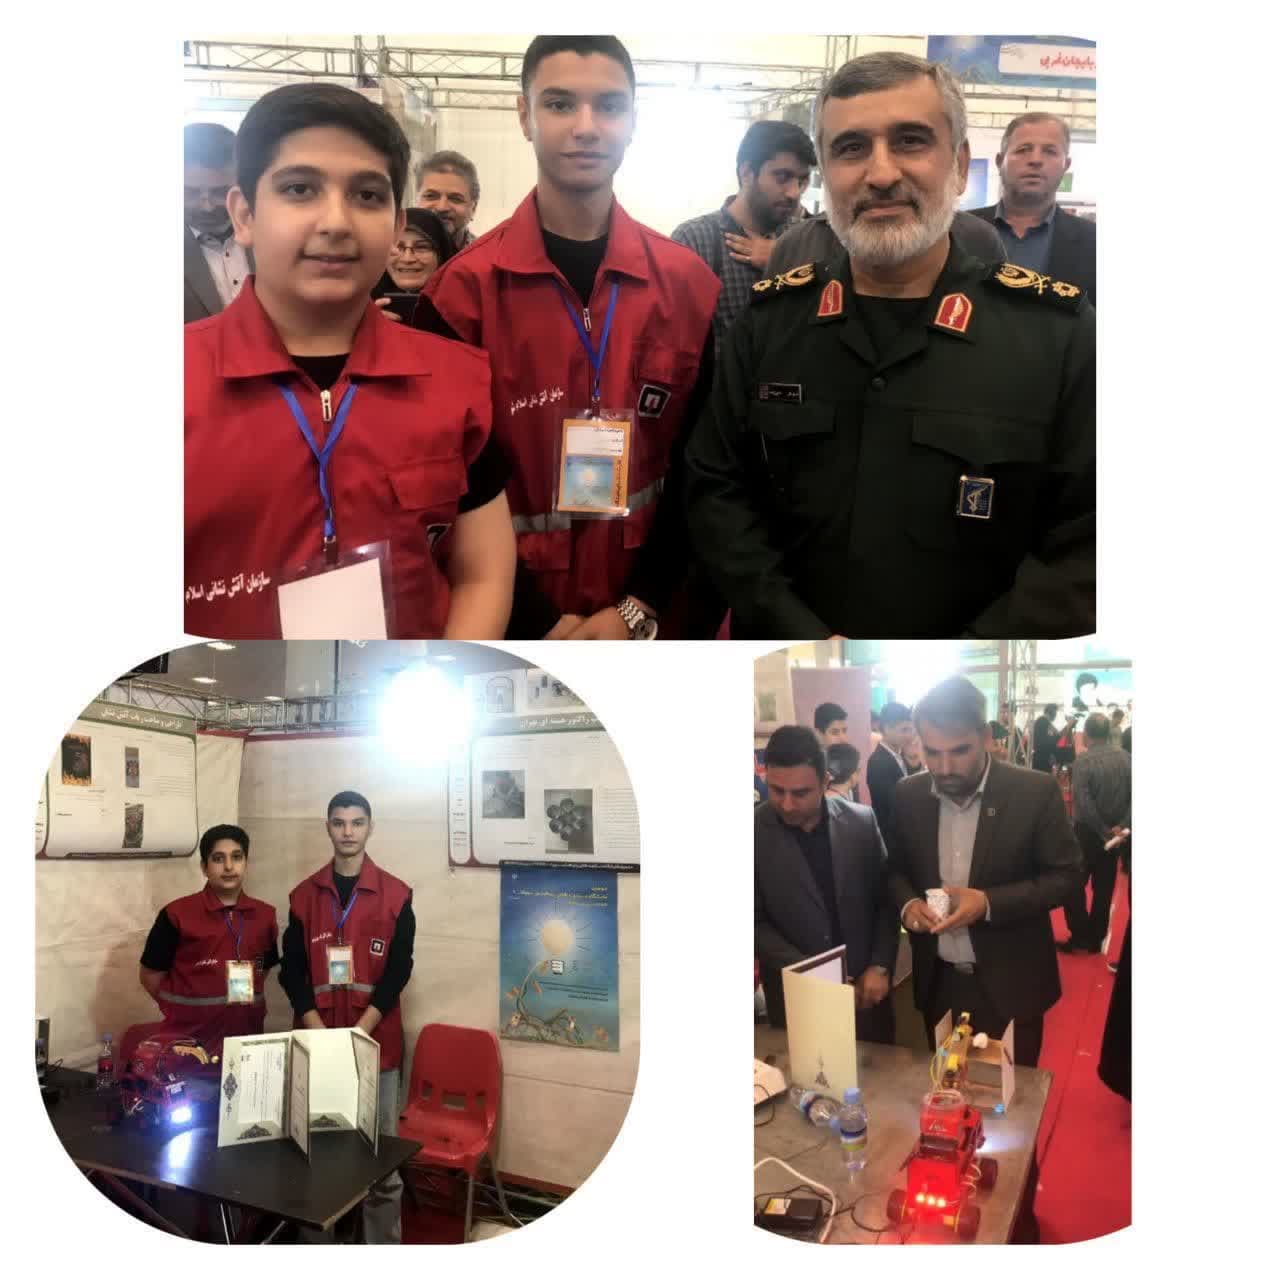 شرکت تیم رباتیک آتش نشان داوطلب آتش نشانی اسلامشهر در نمایشگاه دستاوردهای پژوهشی سمپاد تهران